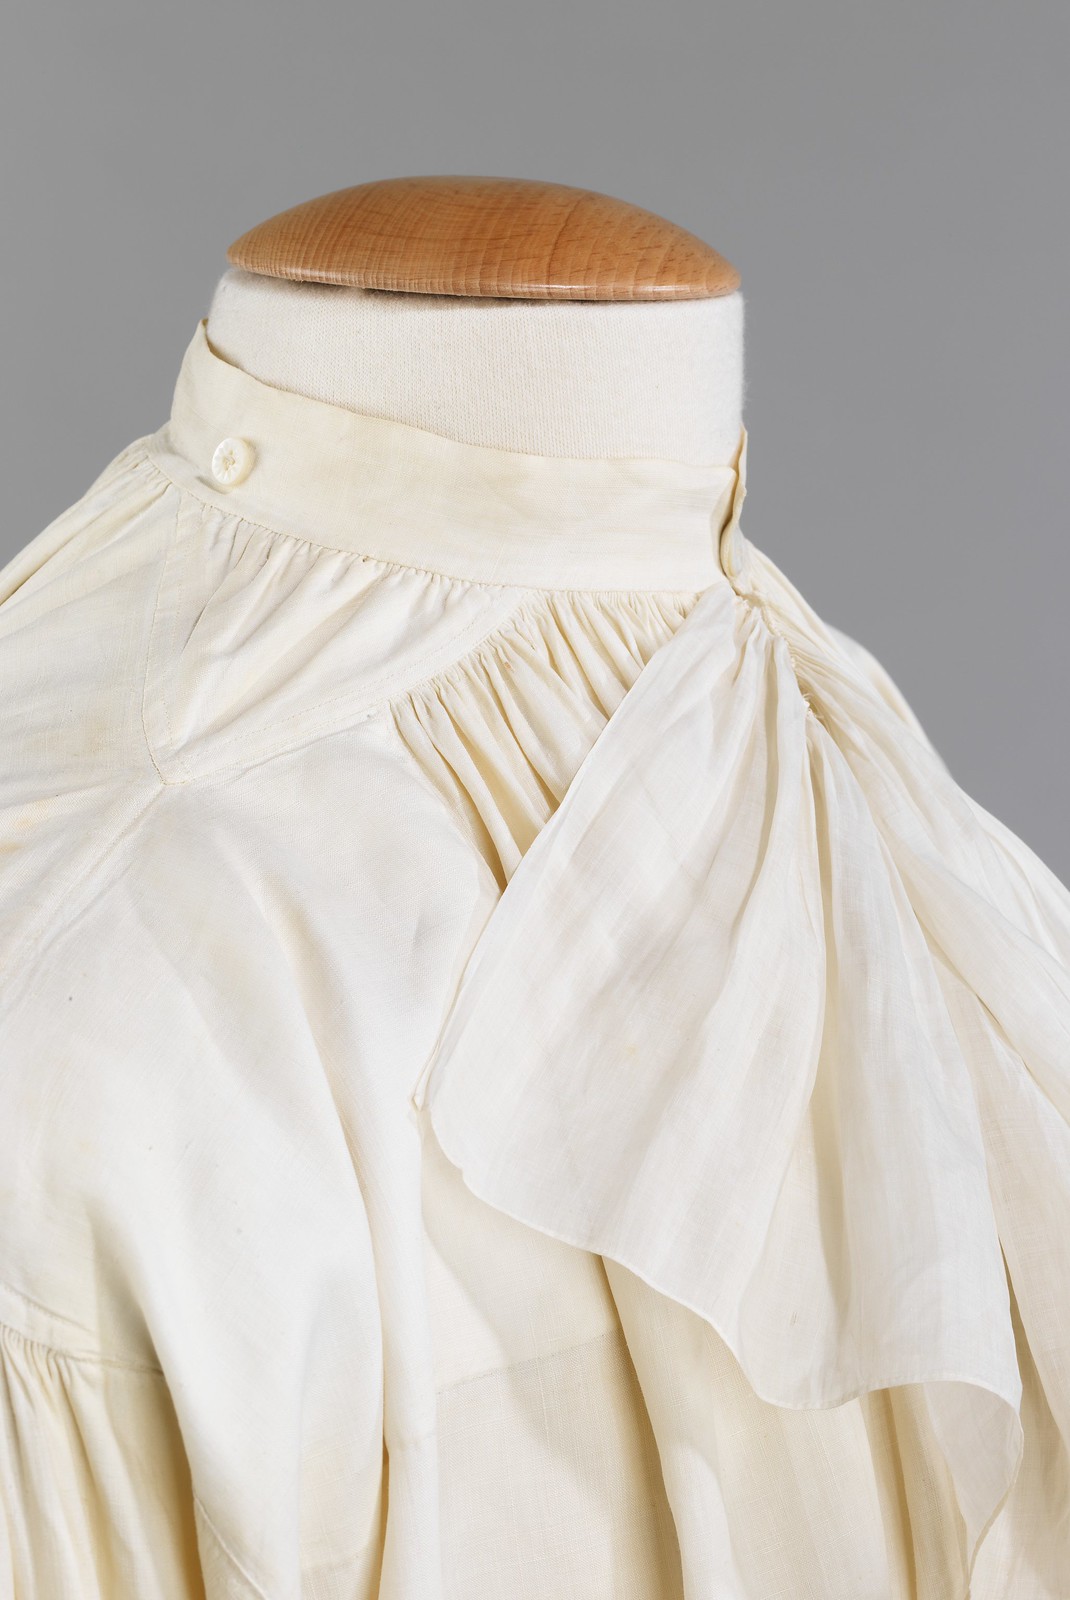 1780. Shirt. French. Linen. metmuseum